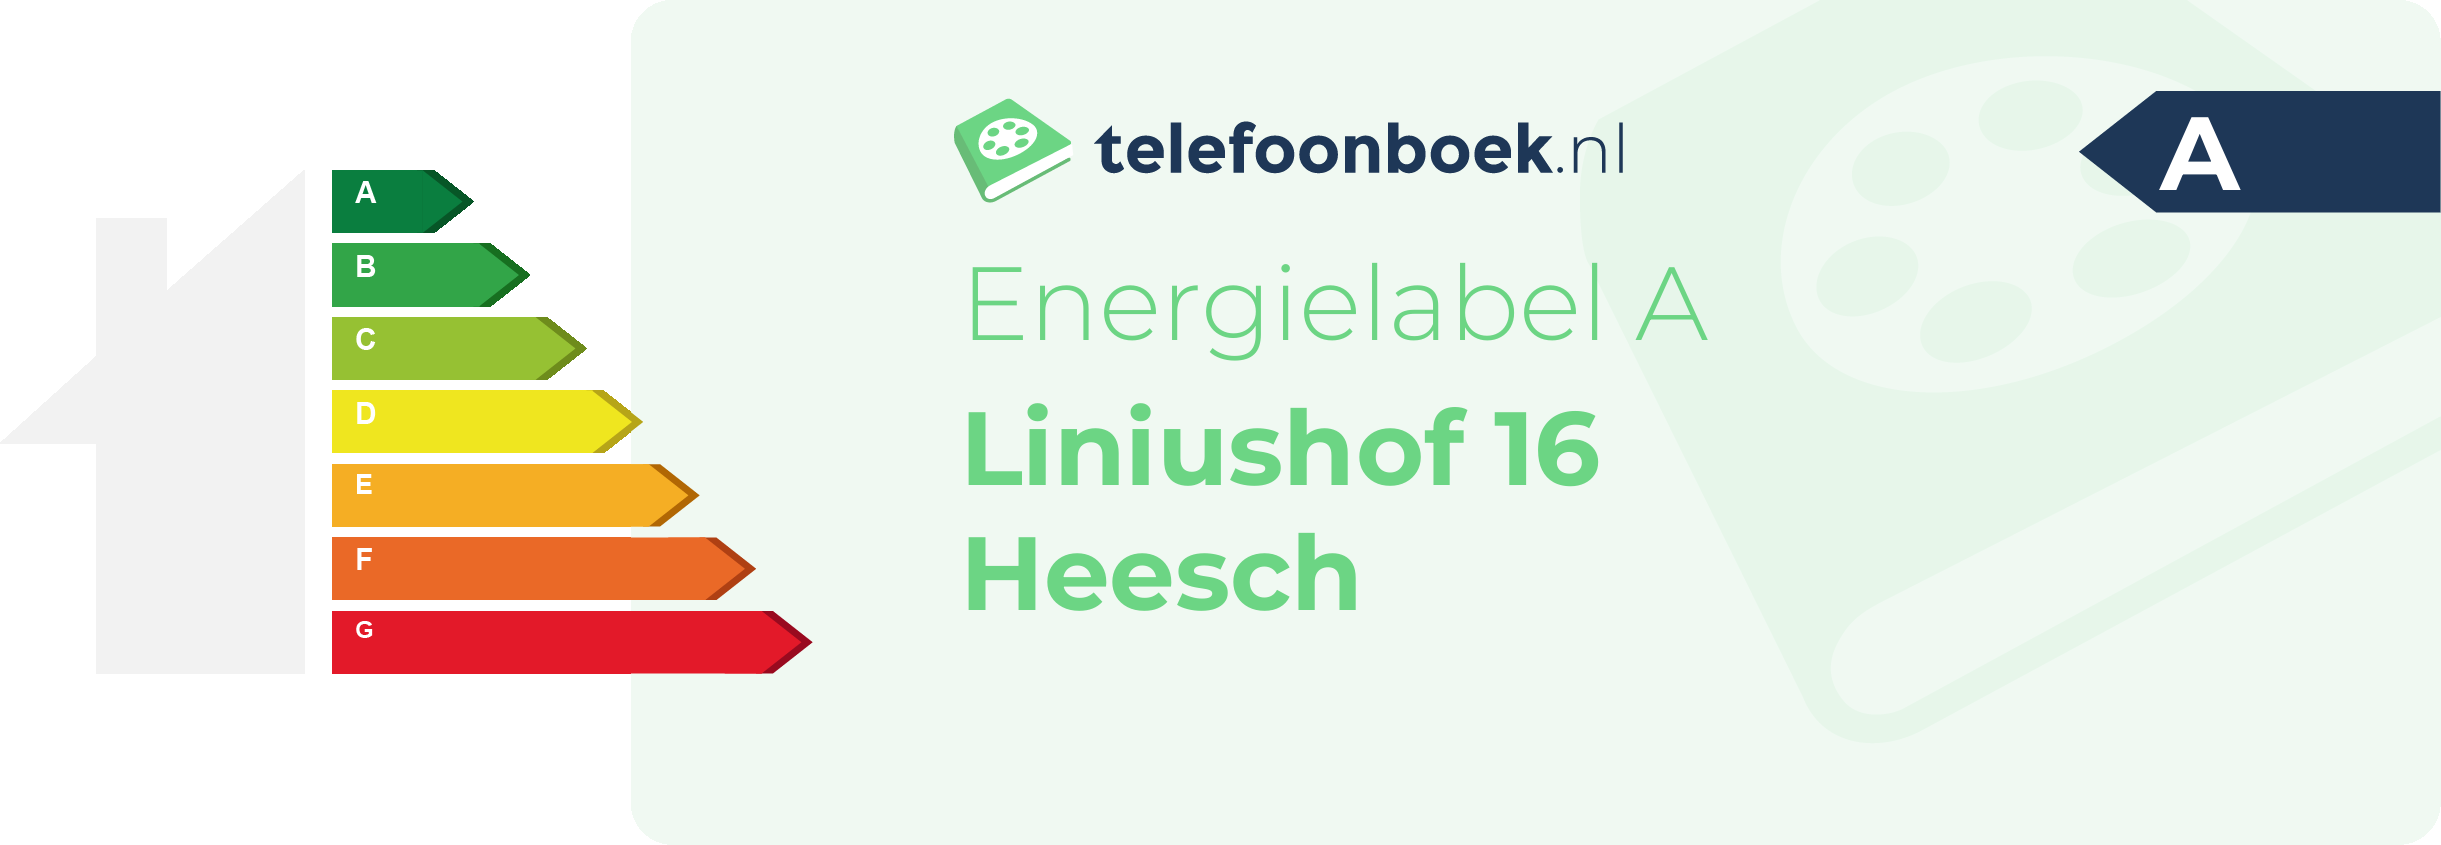 Energielabel Liniushof 16 Heesch